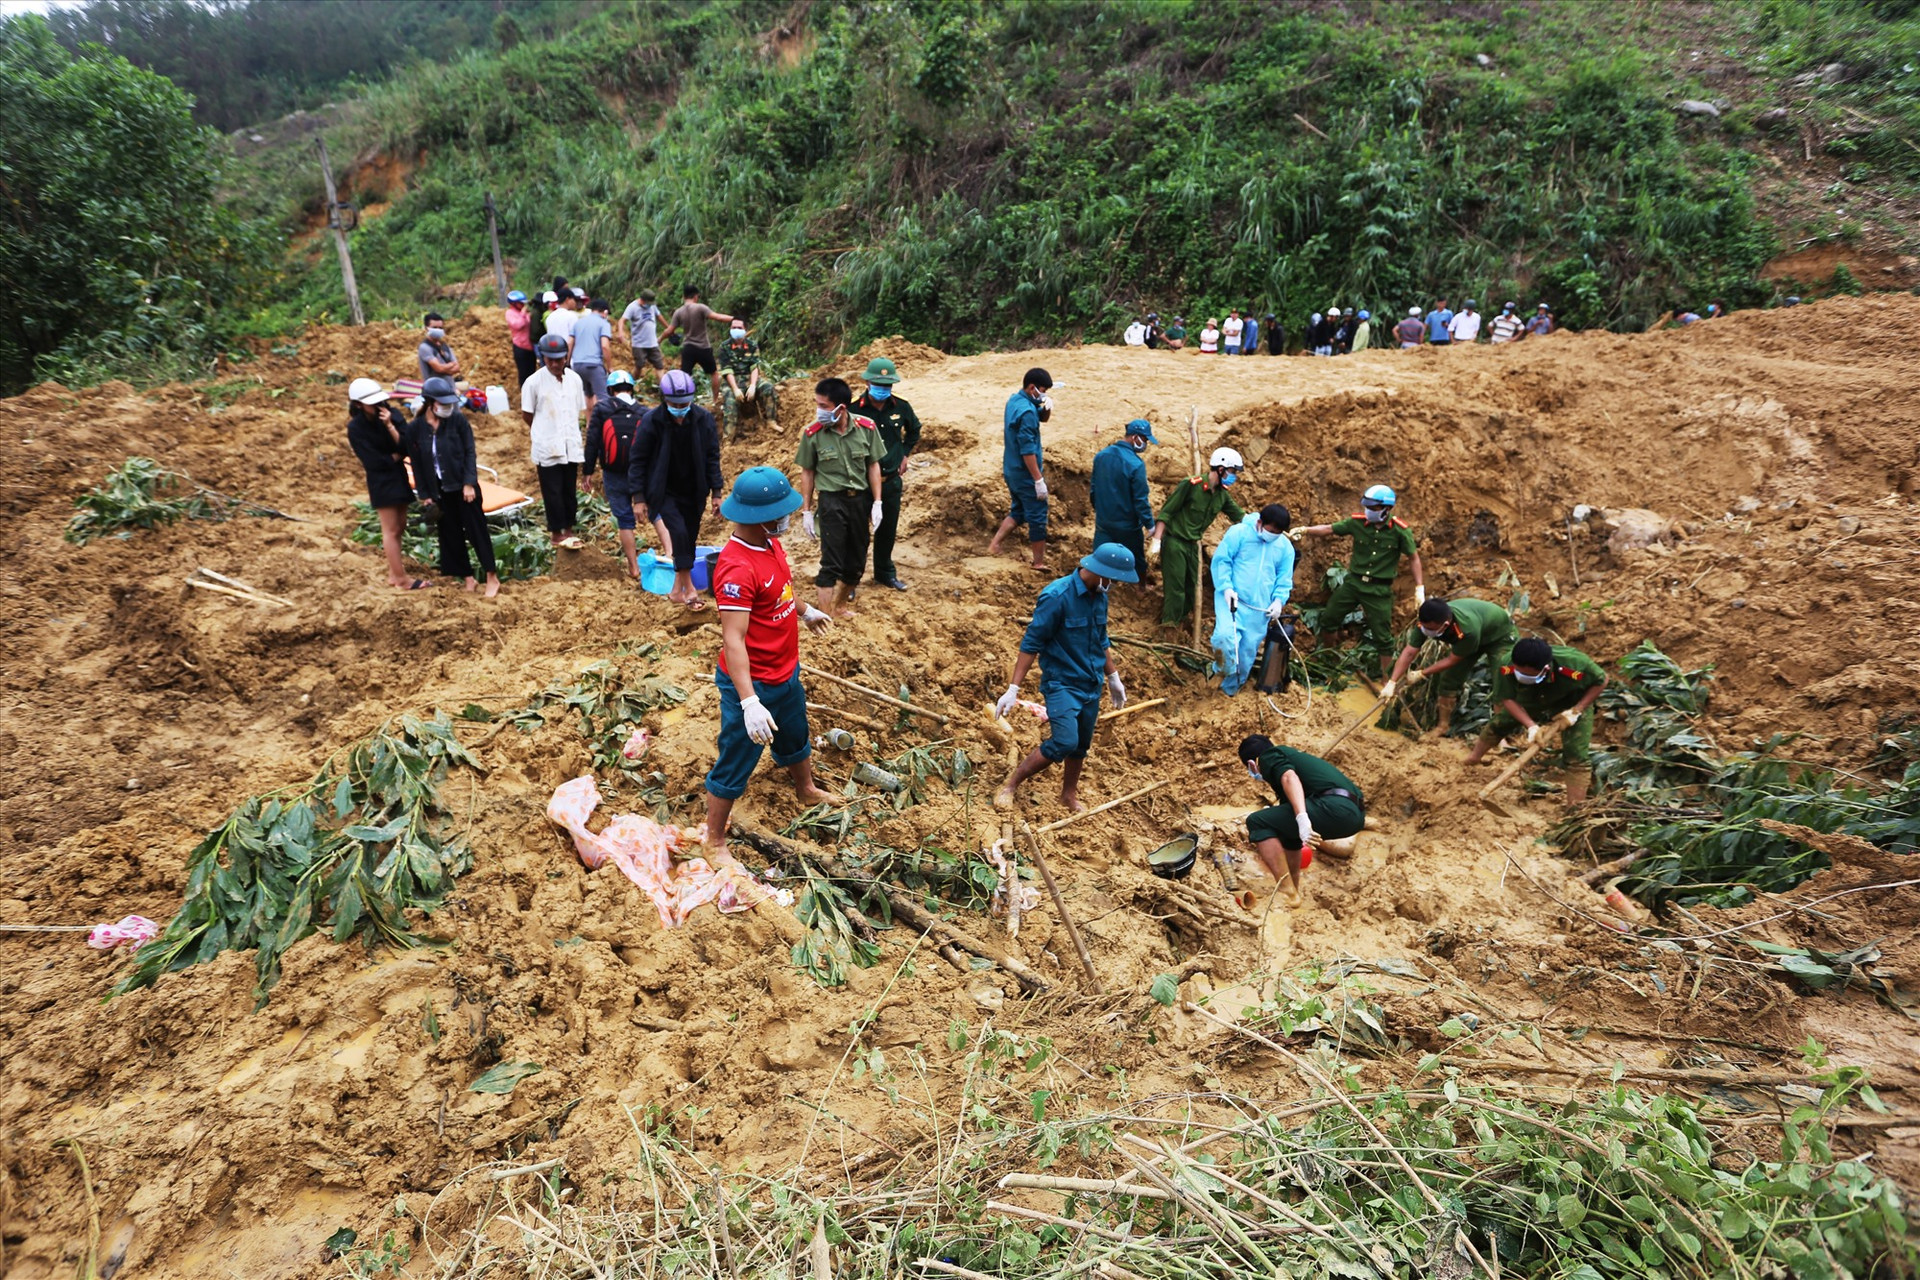 Trước đó chiều 11/11, đoạn qua xã Trà Tân, huyện Bắc Trà My, sạt lở vùi lấp một người. Năm ngày sau, cơ quan chức năng đào bới hơn 60.000 m3 đất đá, tìm thấy thi thể nạn nhân bị vùi lấp 2m, cách vị trí gặp nạn 30 m.